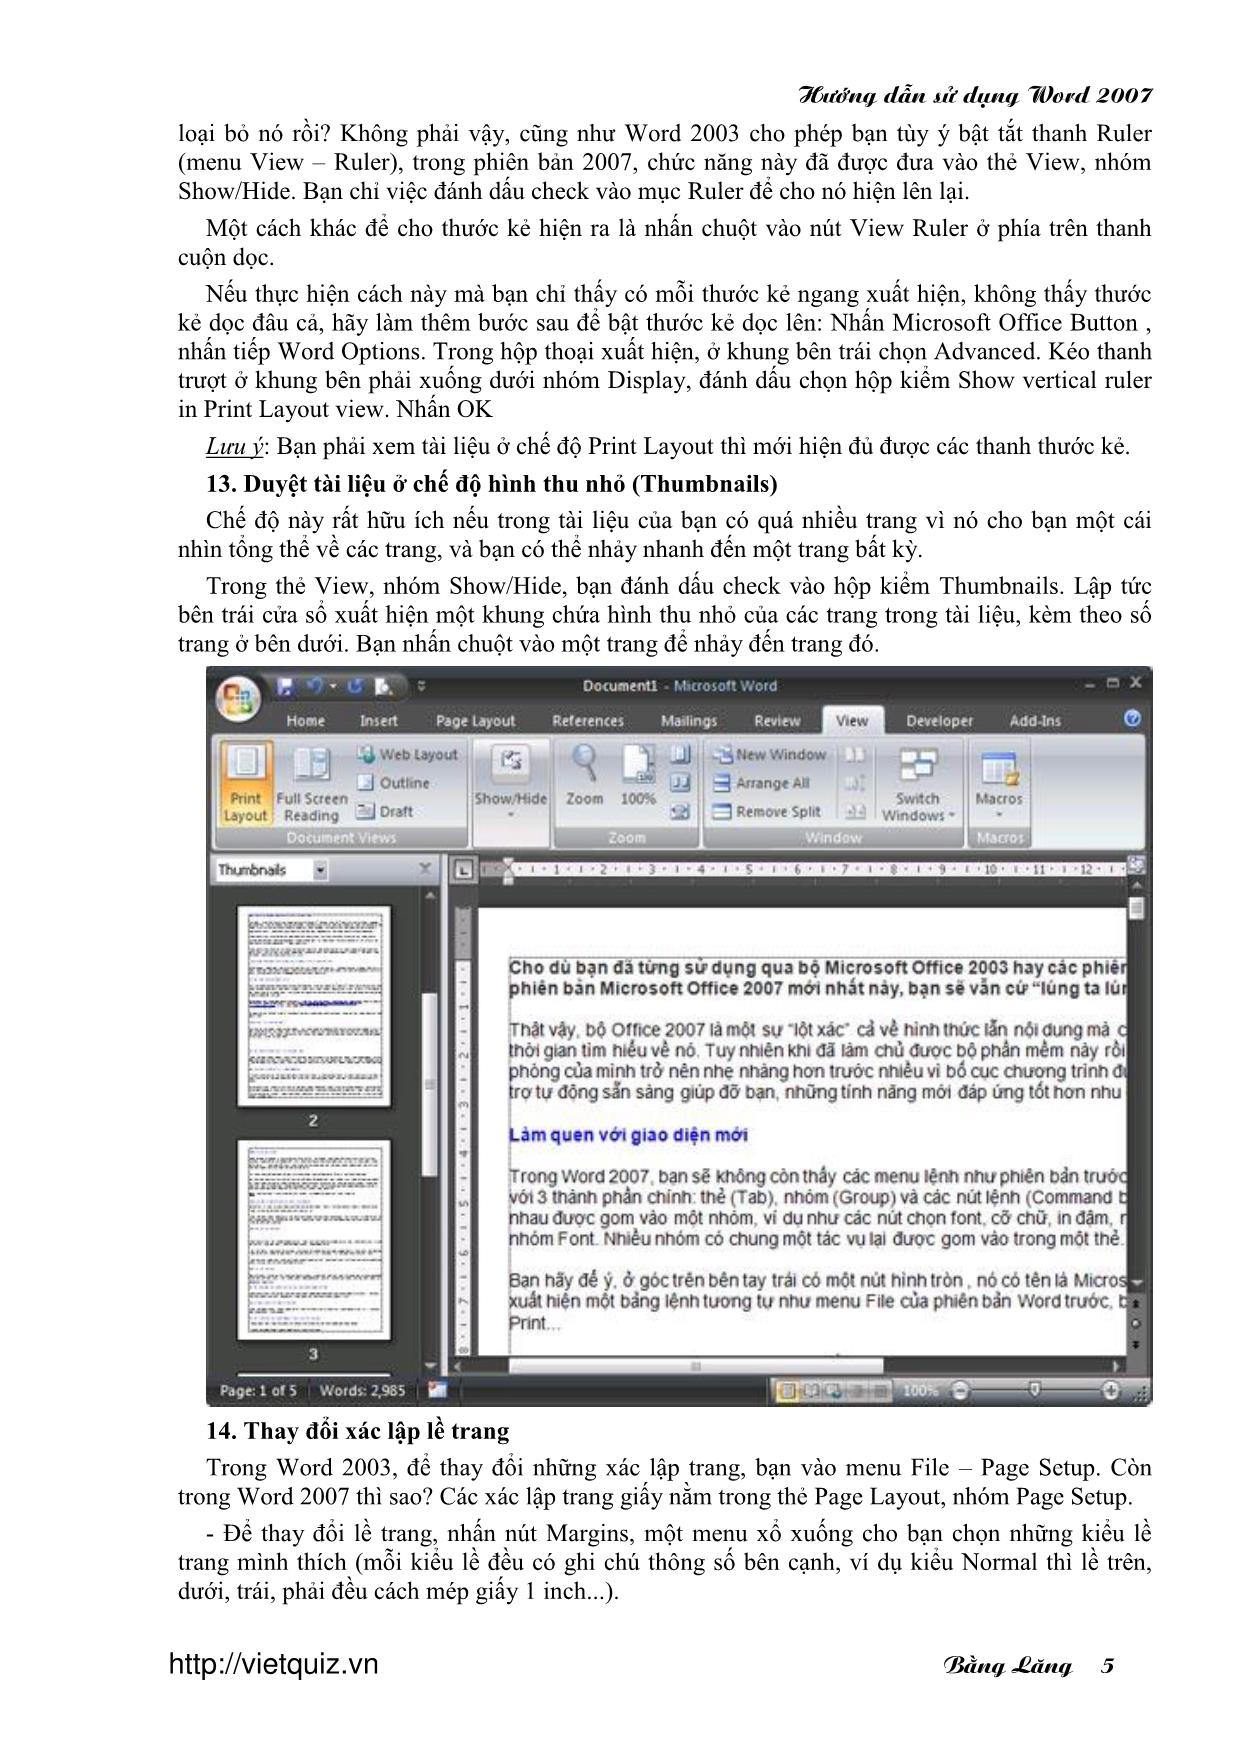 Hướng dẫn sử dụng word 2007 trang 5